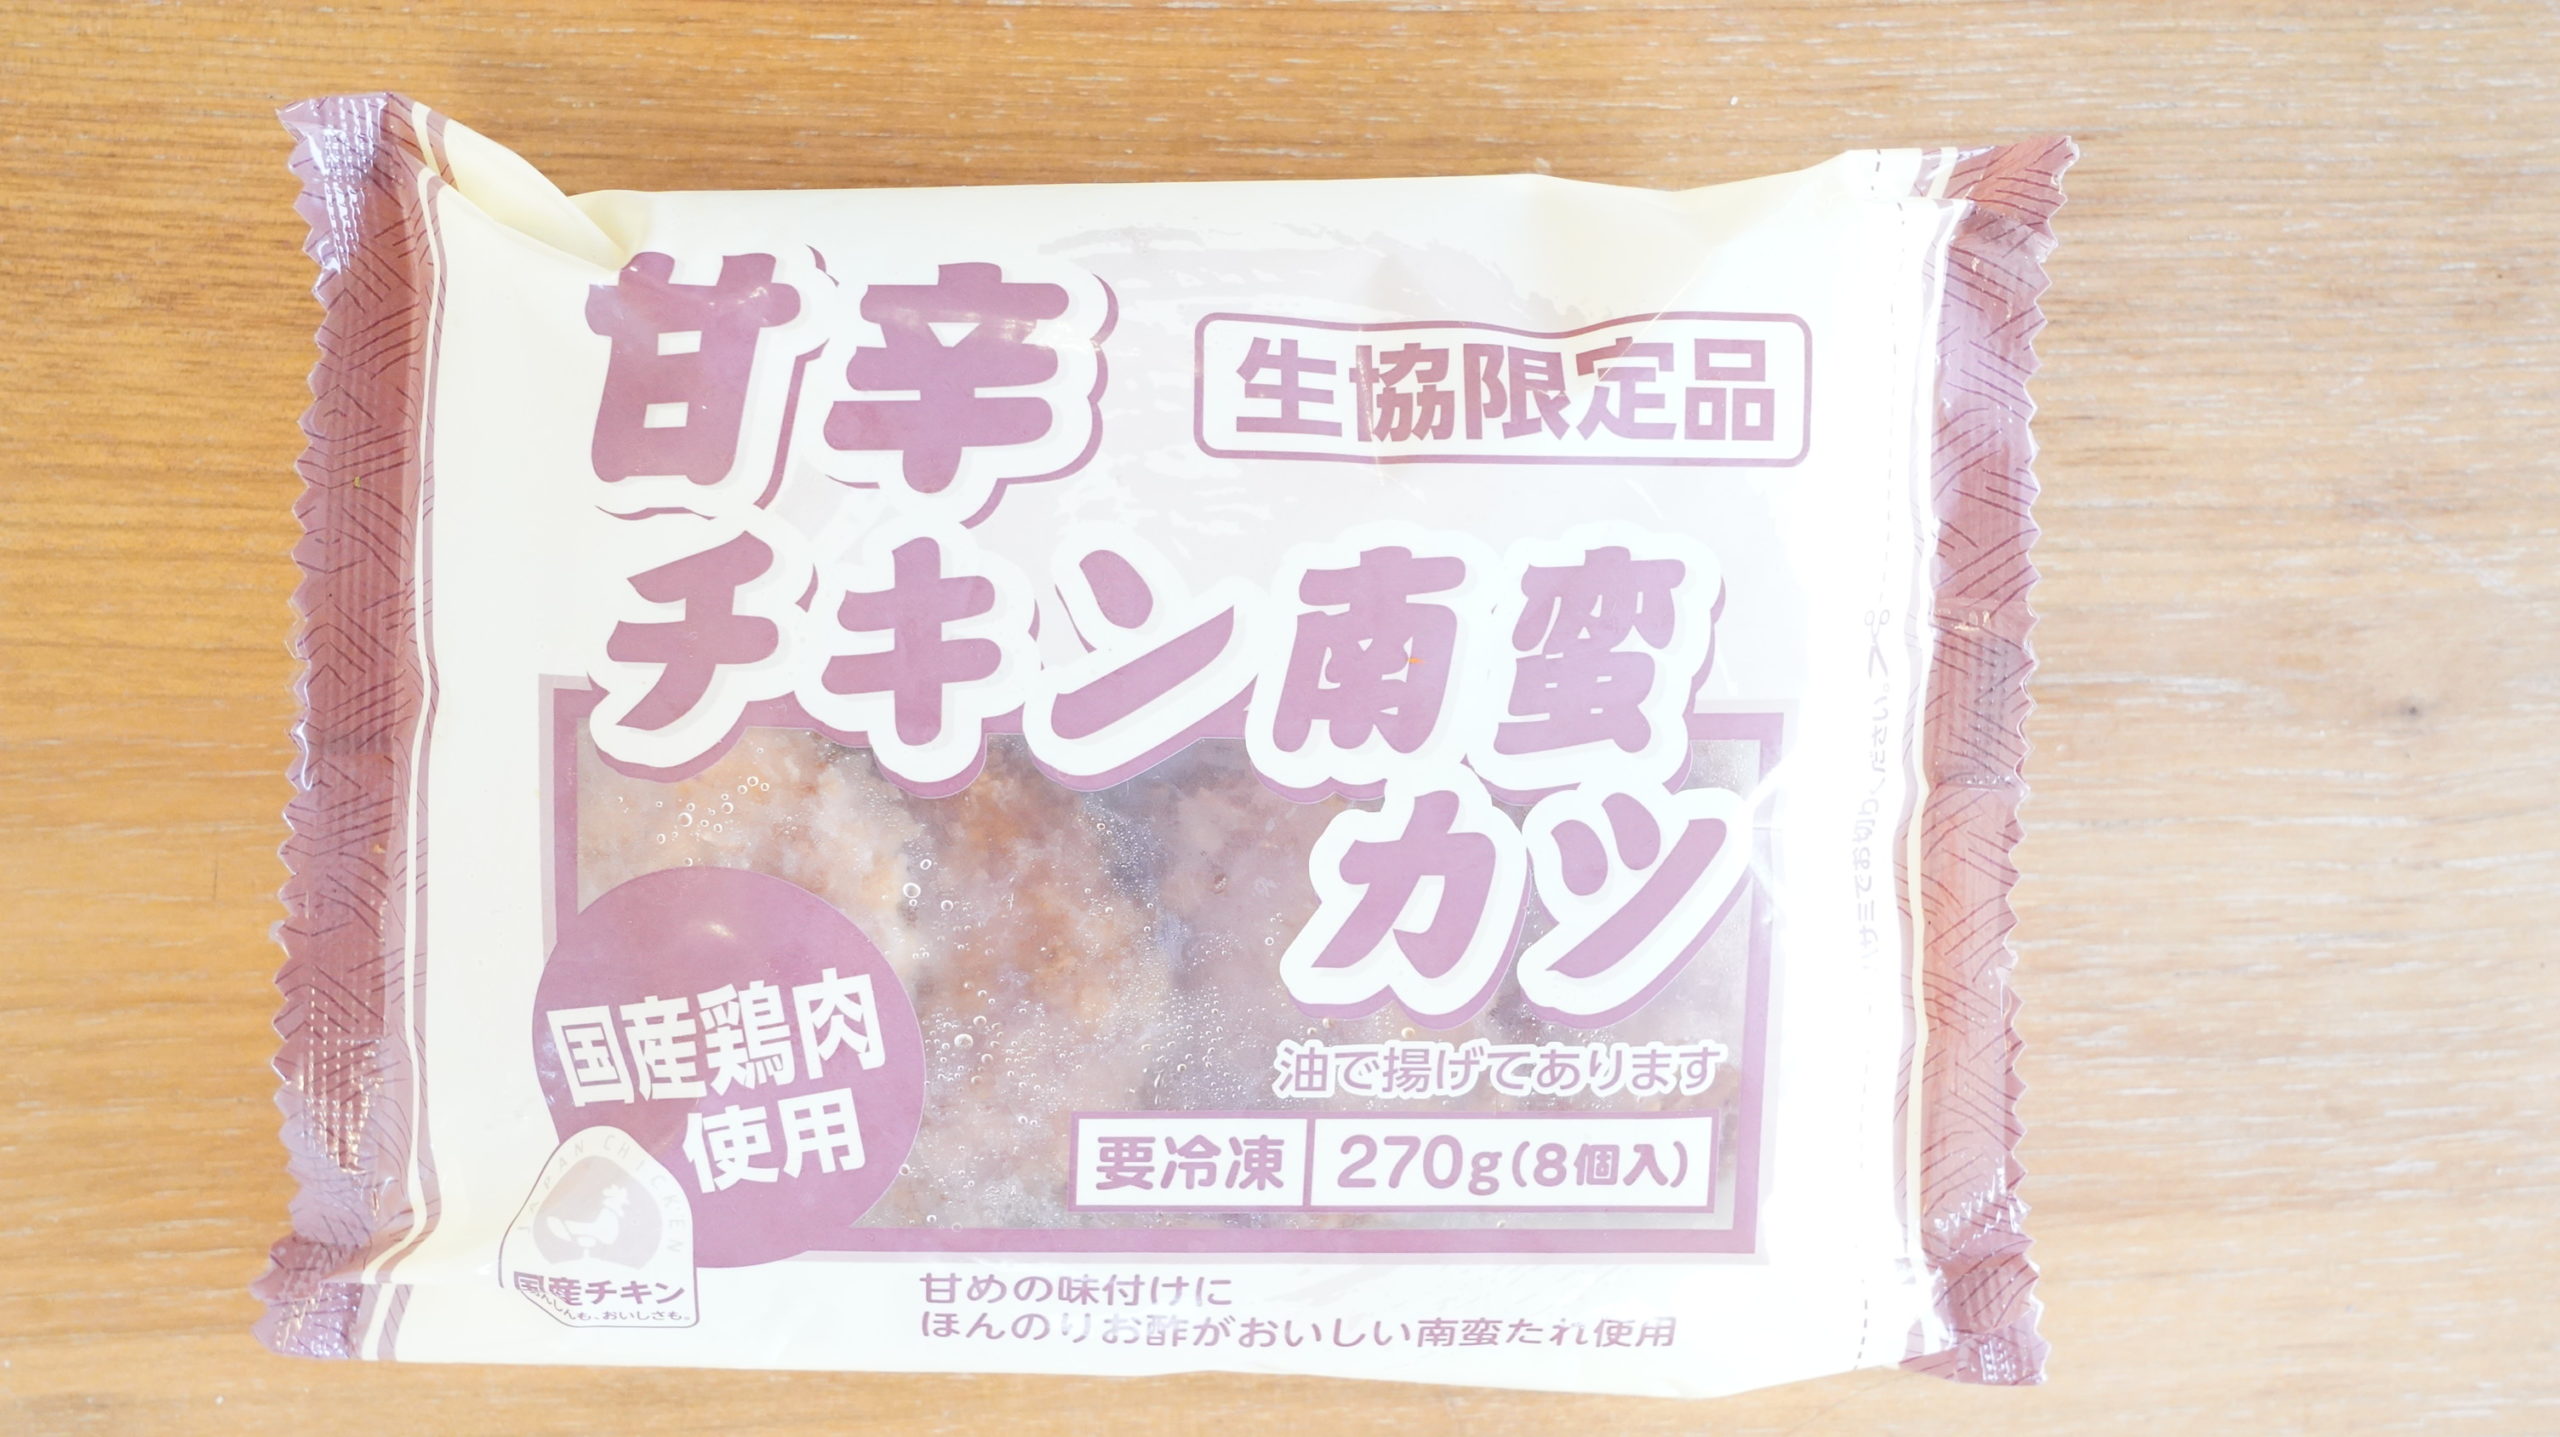 生協coop宅配の冷凍食品・ニチレイ「甘辛チキン南蛮カツ」のパッケージ写真